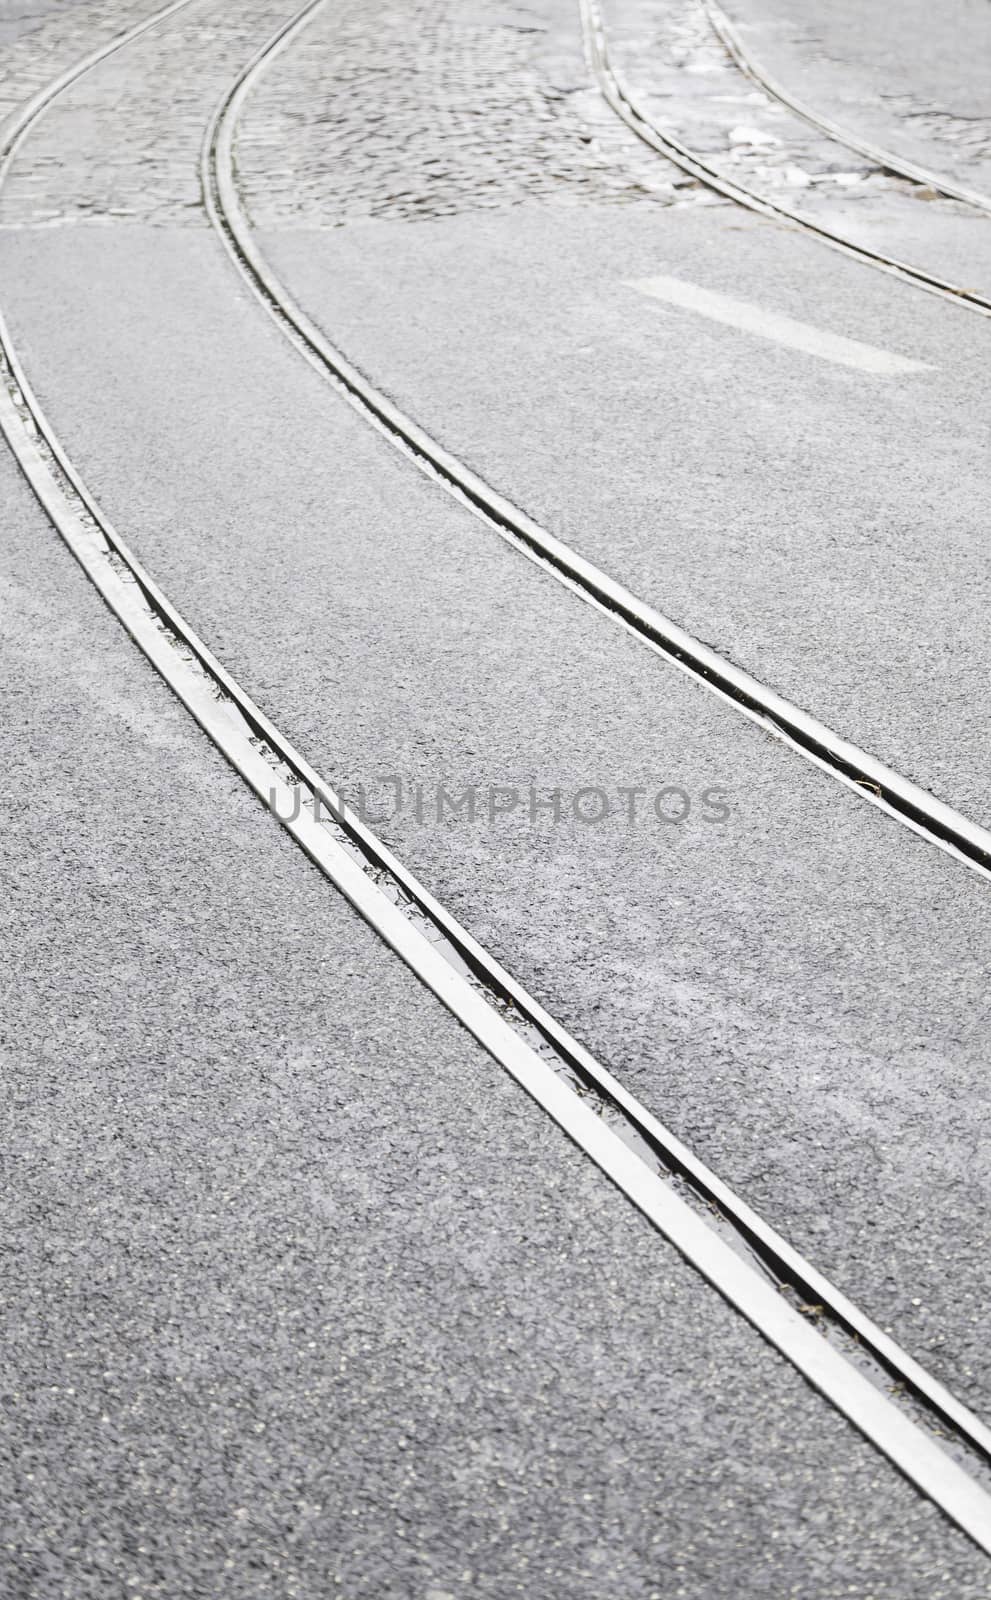 Tram tracks on a street in Lisbon by esebene